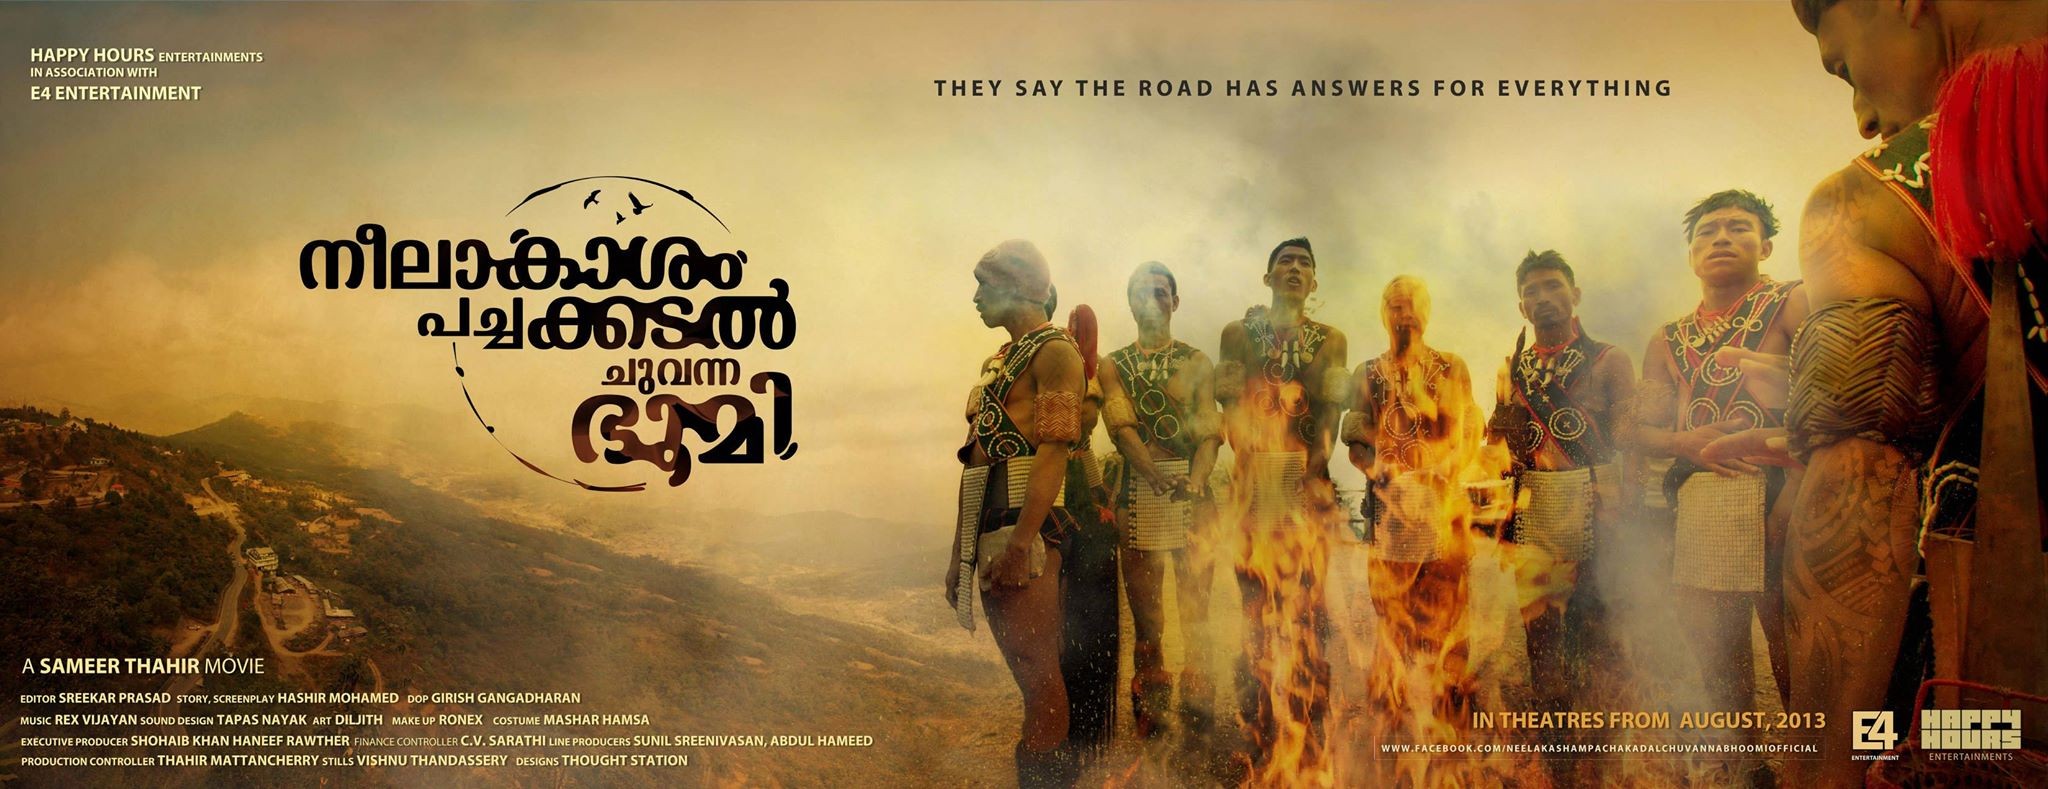 Mega Sized Movie Poster Image for Neelakasham Pachakadal Chuvanna Bhoomi (#4 of 15)